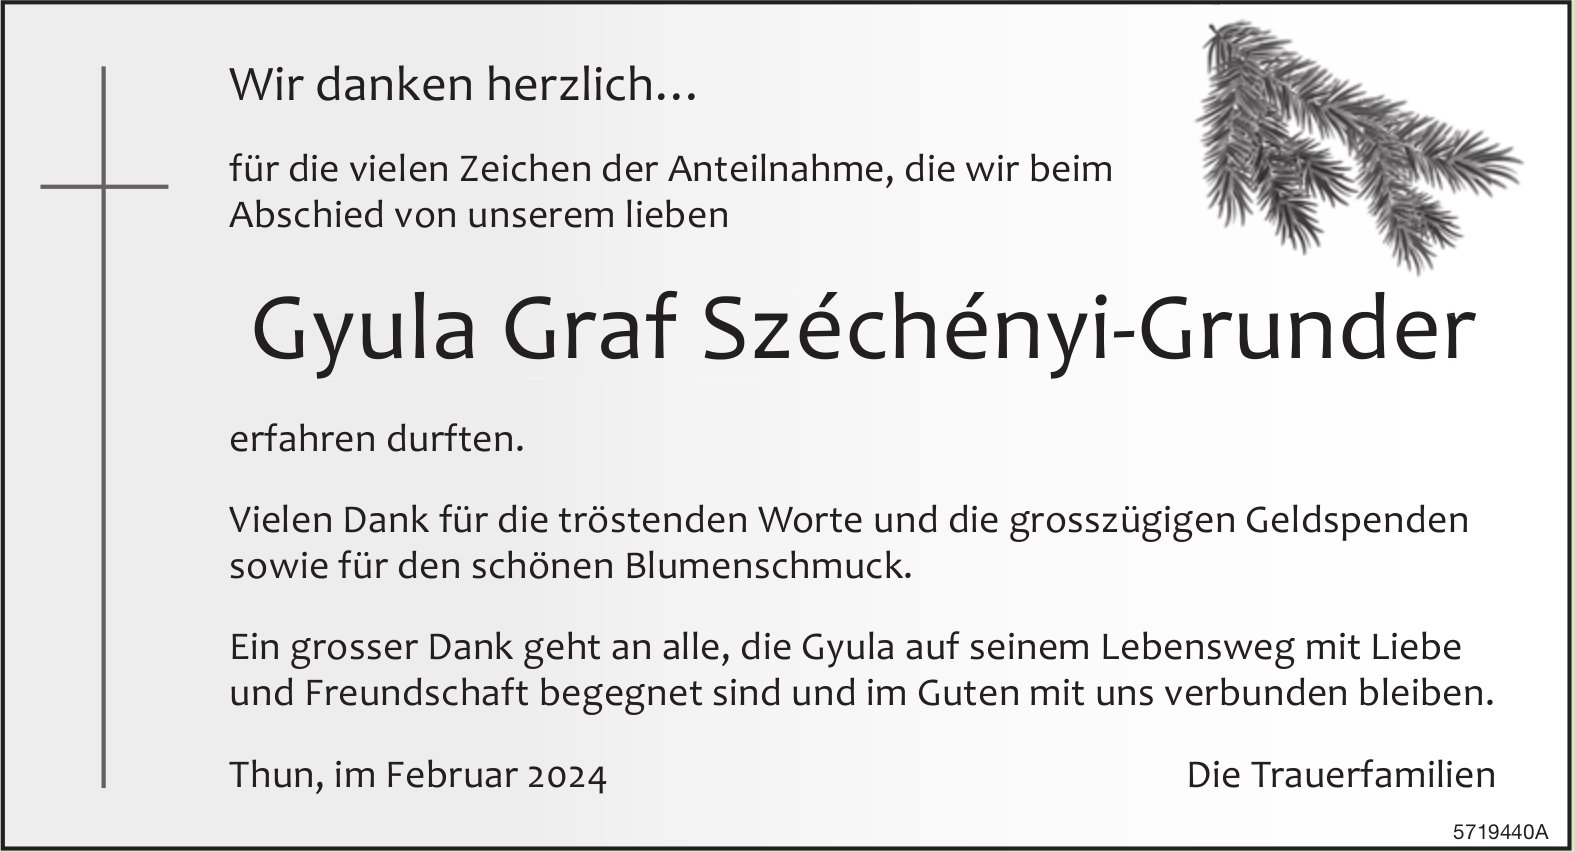 Graf Széchényi-Grunder Gyula, im Februar 2024 / DS